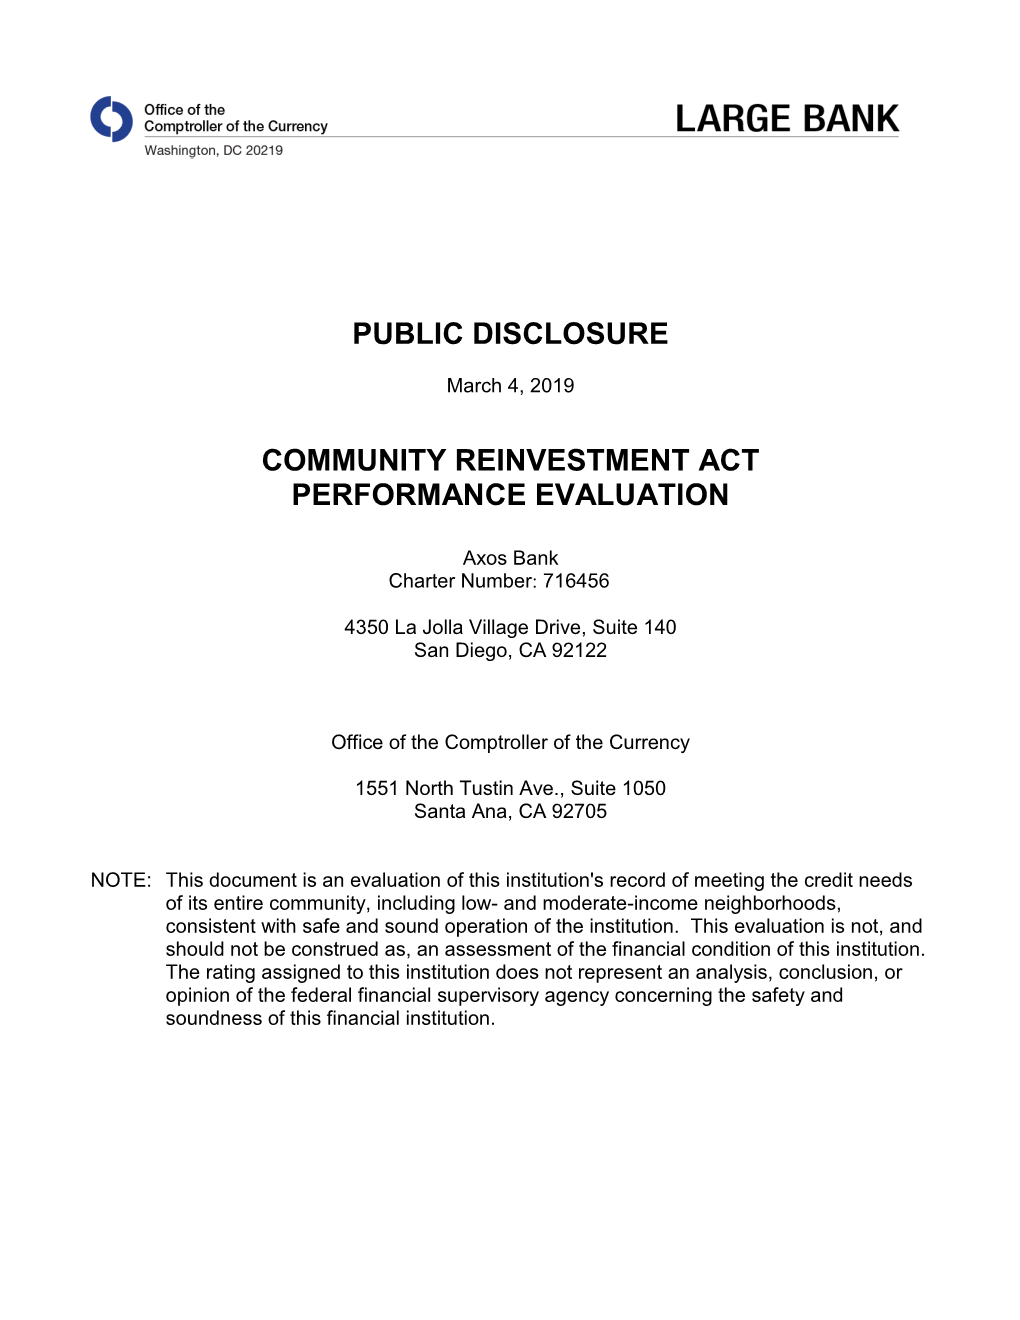 CRA Evaluation Charter No. 716456